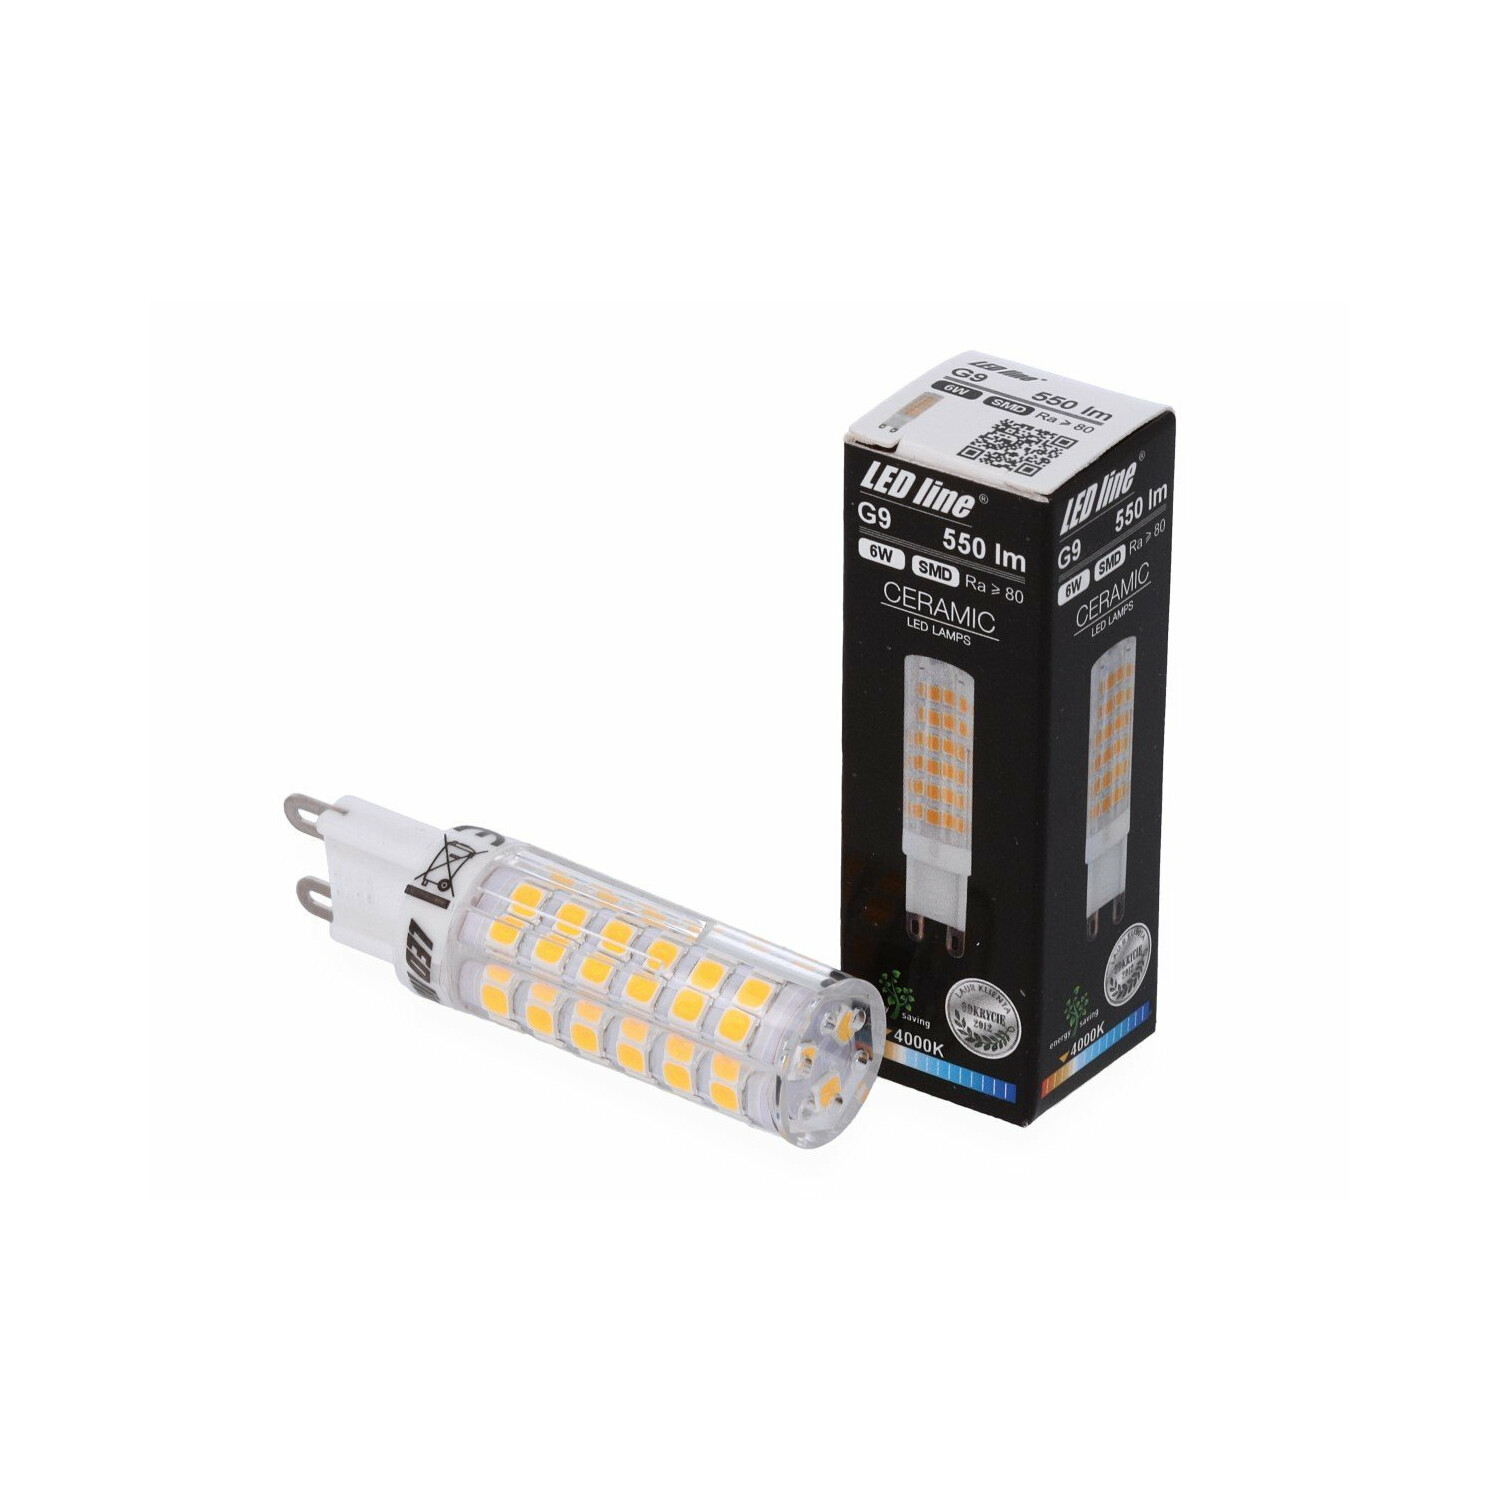 LED LINE G9 LED 6W Pack Neutralweiß 550 Leuchtmittel Lumen 2er LED